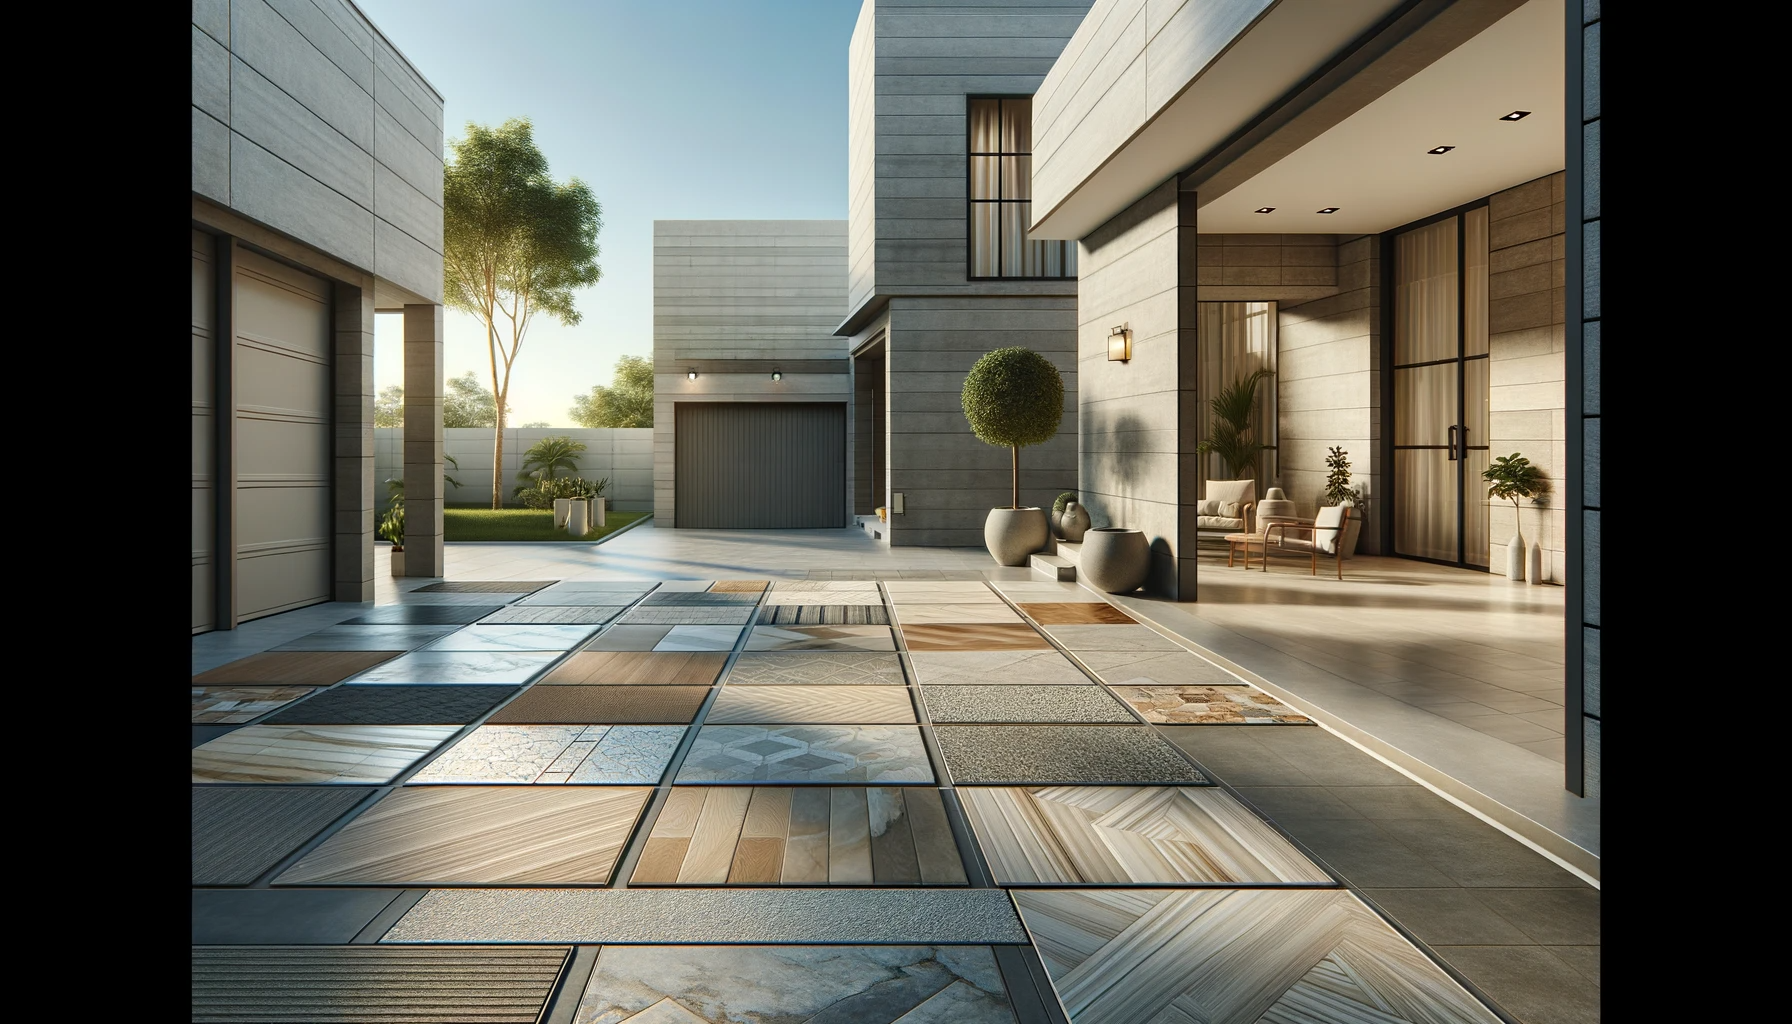 Foto realista de uma área externa residencial com garagem, mostrando diferentes tipos de pisos como cerâmica, porcelanato, pedra natural e concreto, em um ambiente harmonioso e prático.